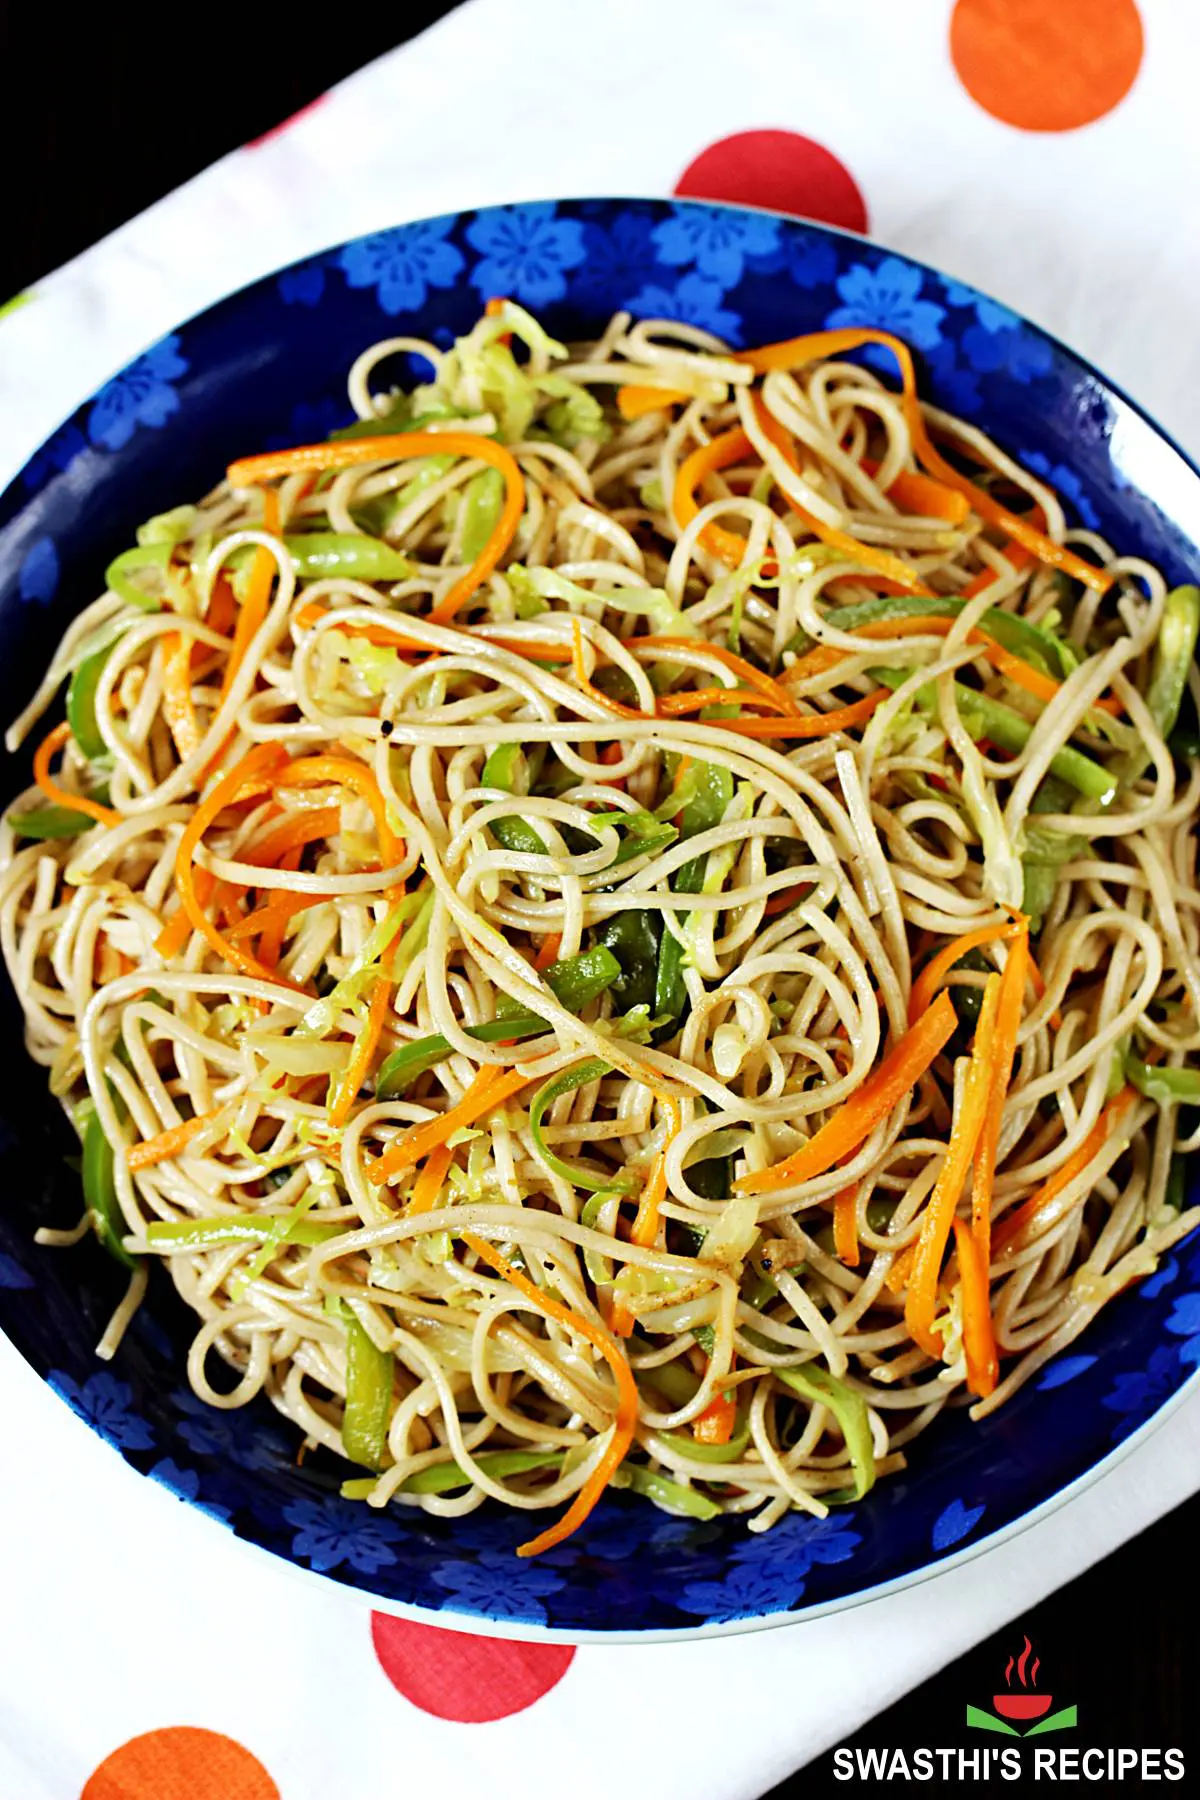 Veg noodles aka vegetable noodles served in a blue bowl